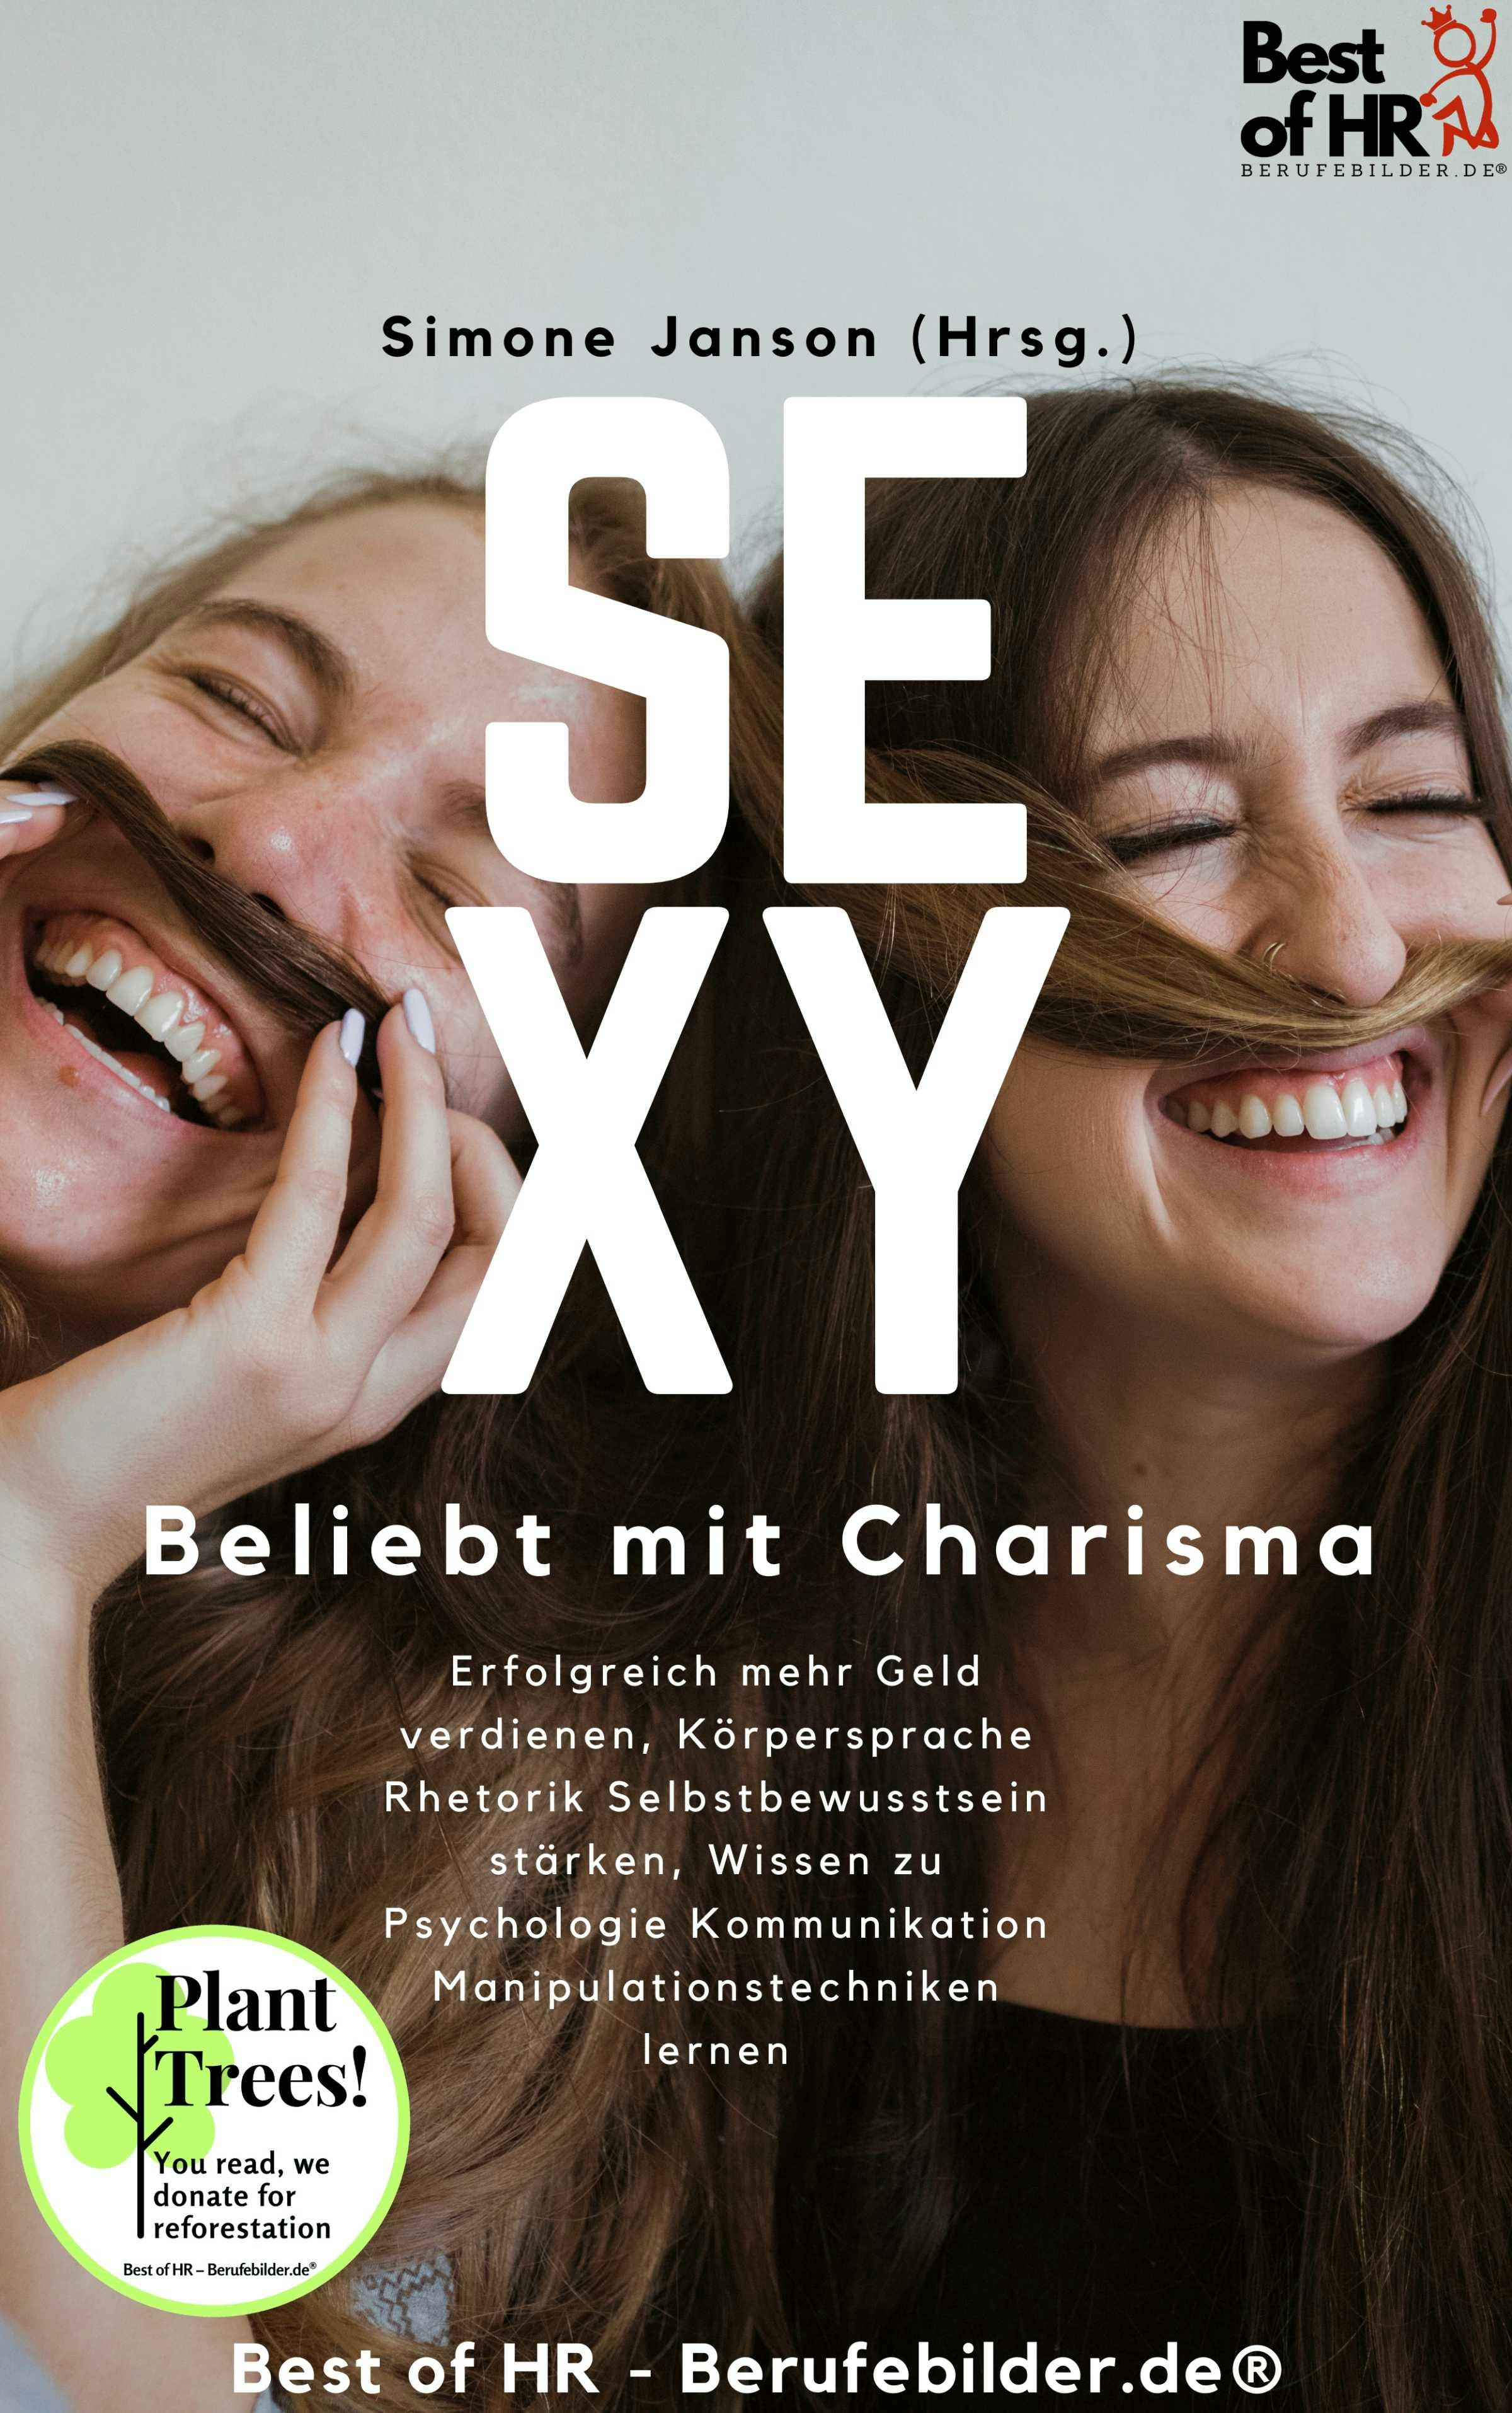 Sexy! Beliebt mit Charisma - undefined